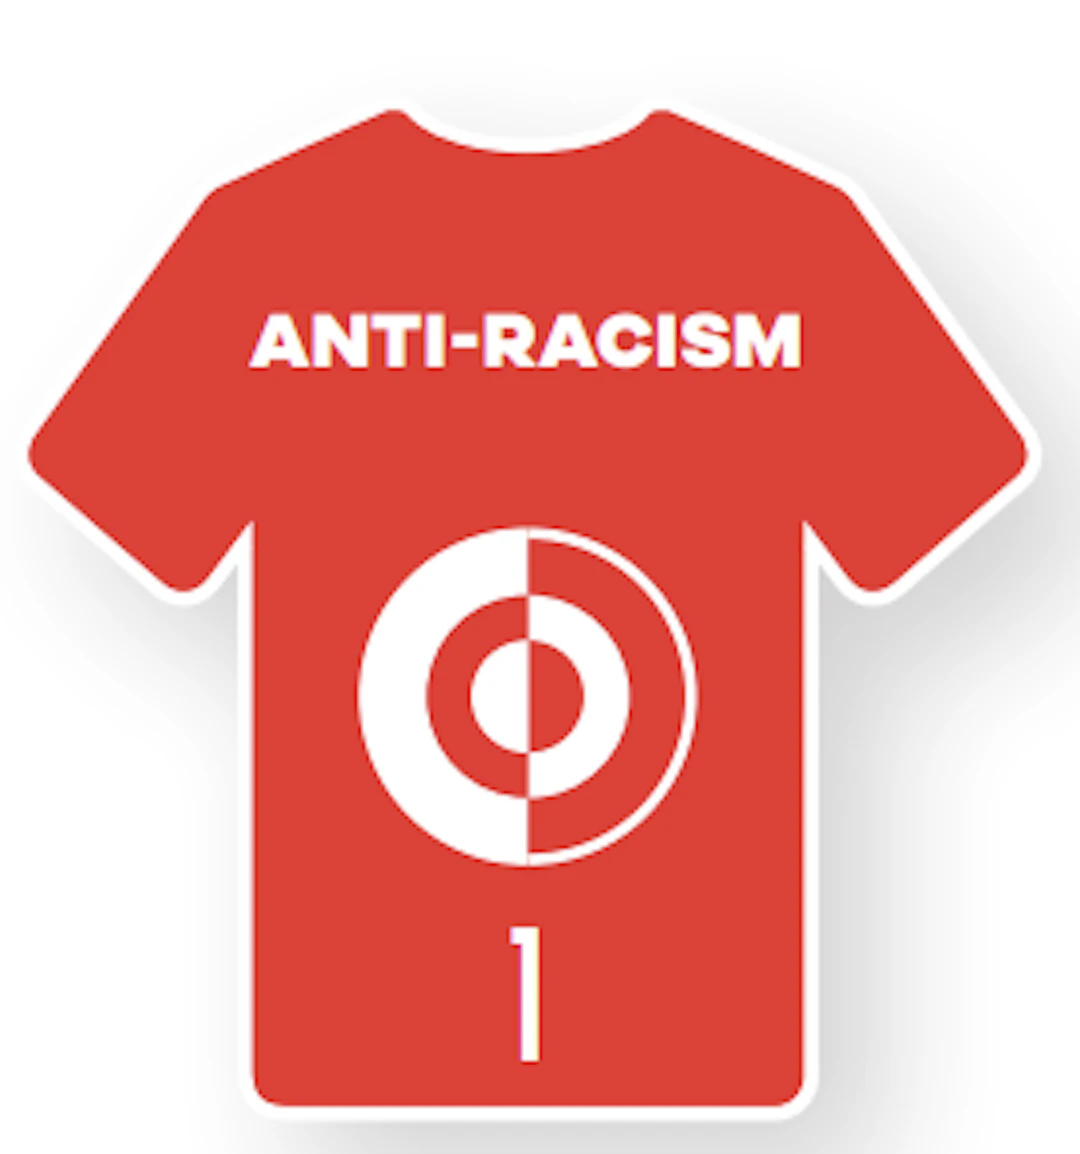 UEFA FSR strategian osa-alueen 1 kuva pelipaita, jossa osa-alueen numero ja nimi Anti-racism